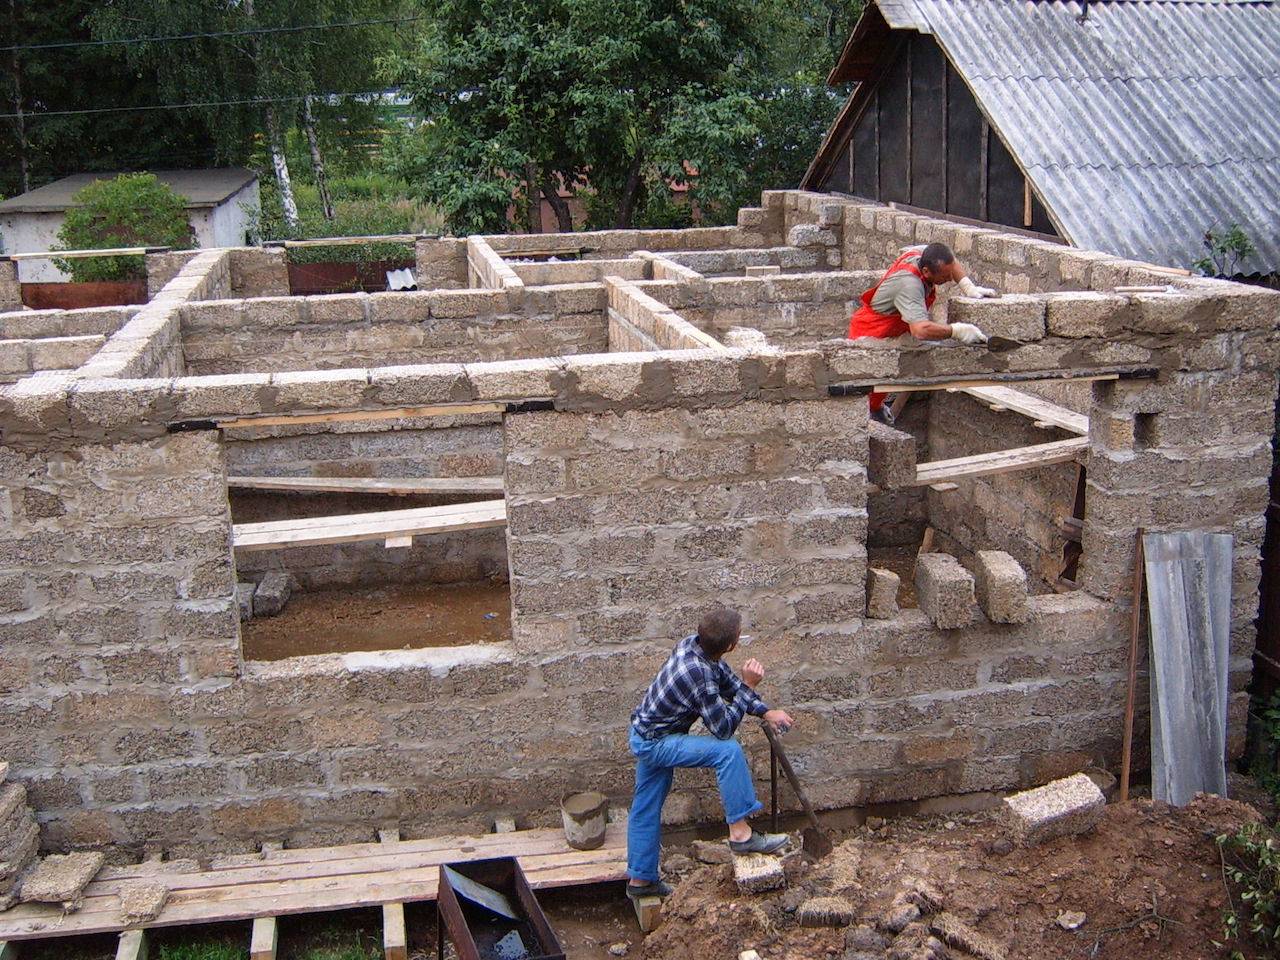 Дом из арболита: строительство из блоков(панелей) и монолита, технология, фундамент и опалубка, плюсы и минусы